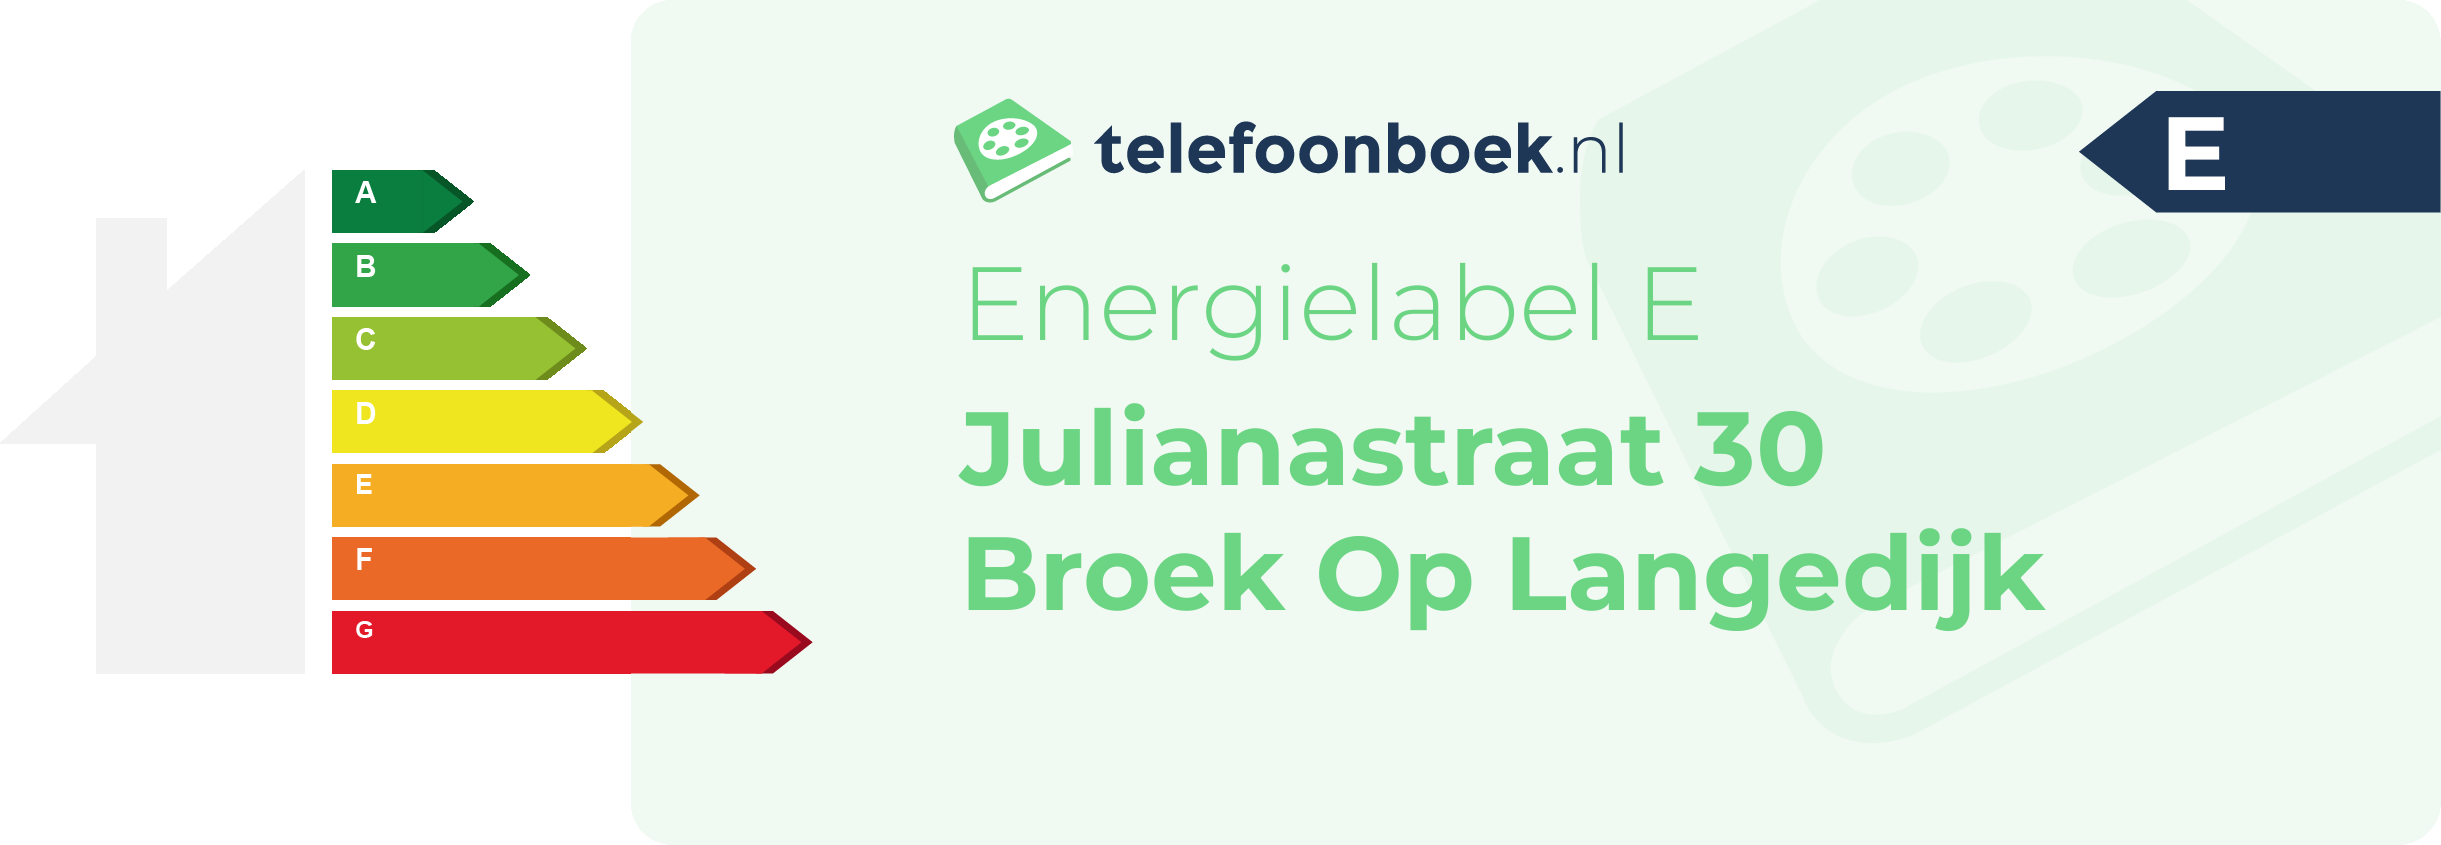 Energielabel Julianastraat 30 Broek Op Langedijk